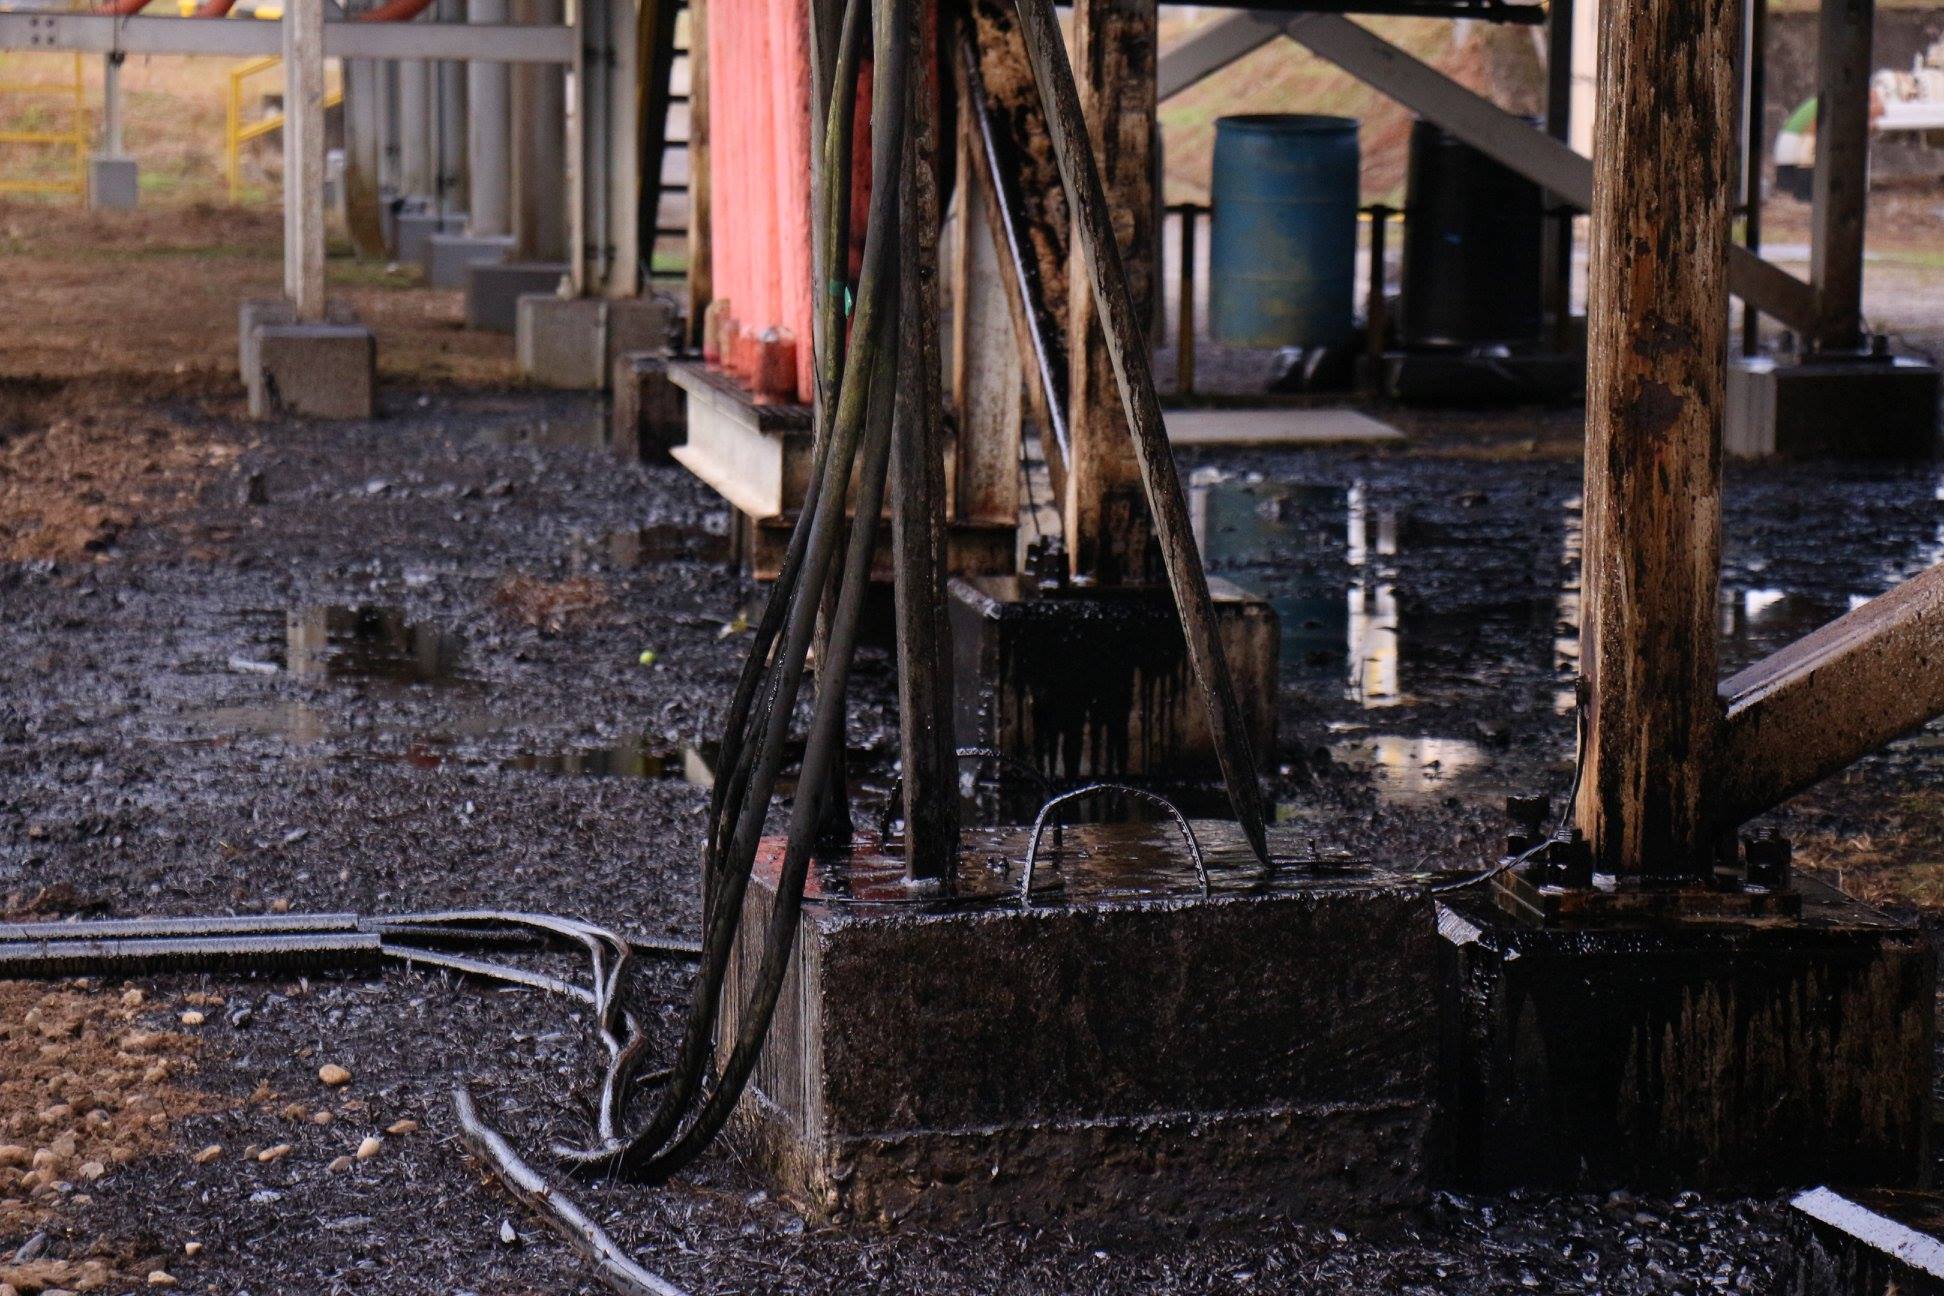 Derrame de petróleo producidos en la estación IRO A y Km 117 e IRO GUINTA, del bloque 16 operado por la compañía privada REPSOL.